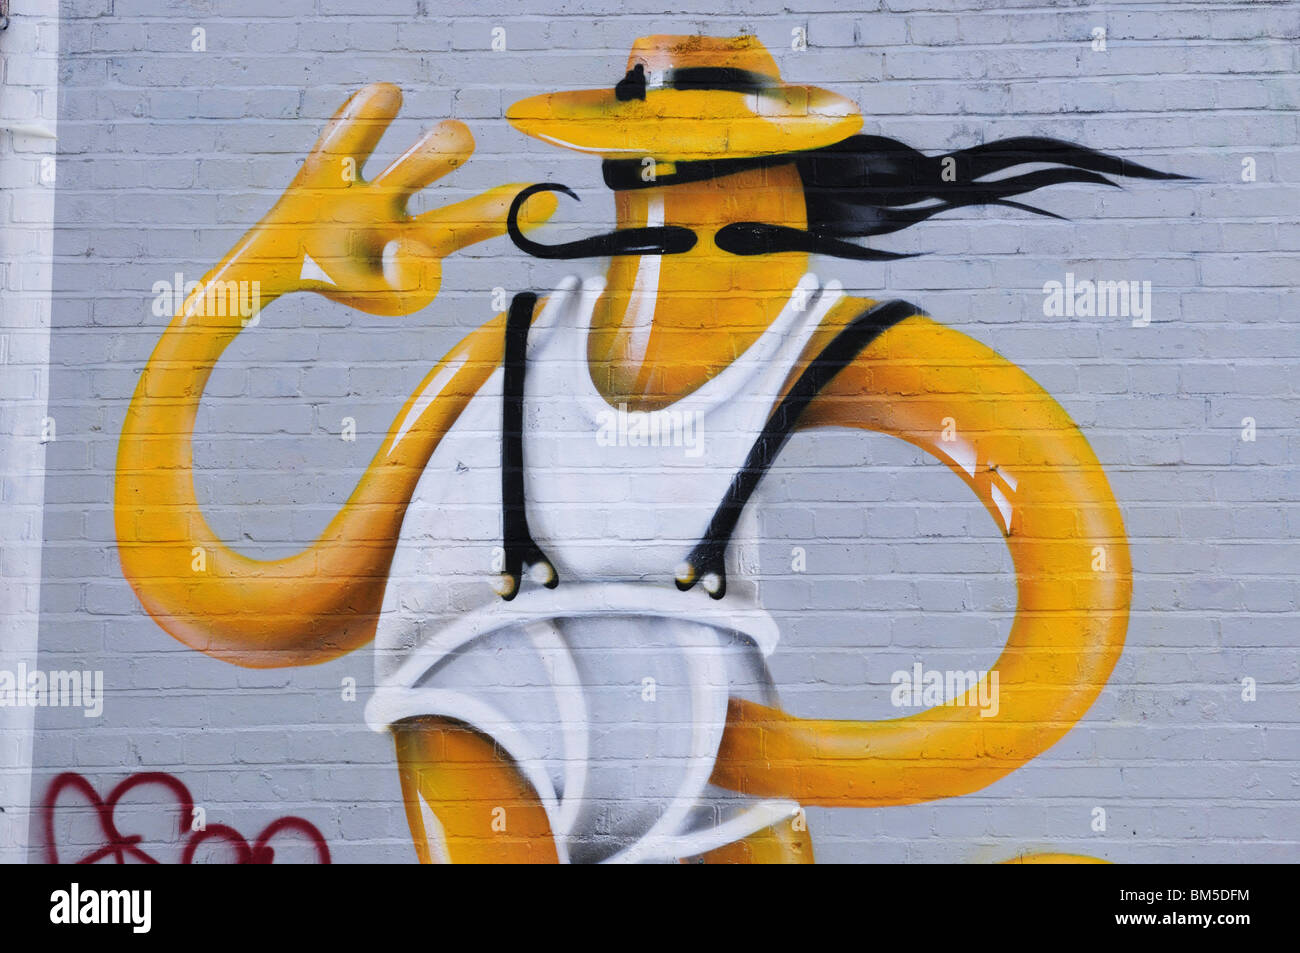 Graffiti off Brick Lane, London, England, UK Stock Photo